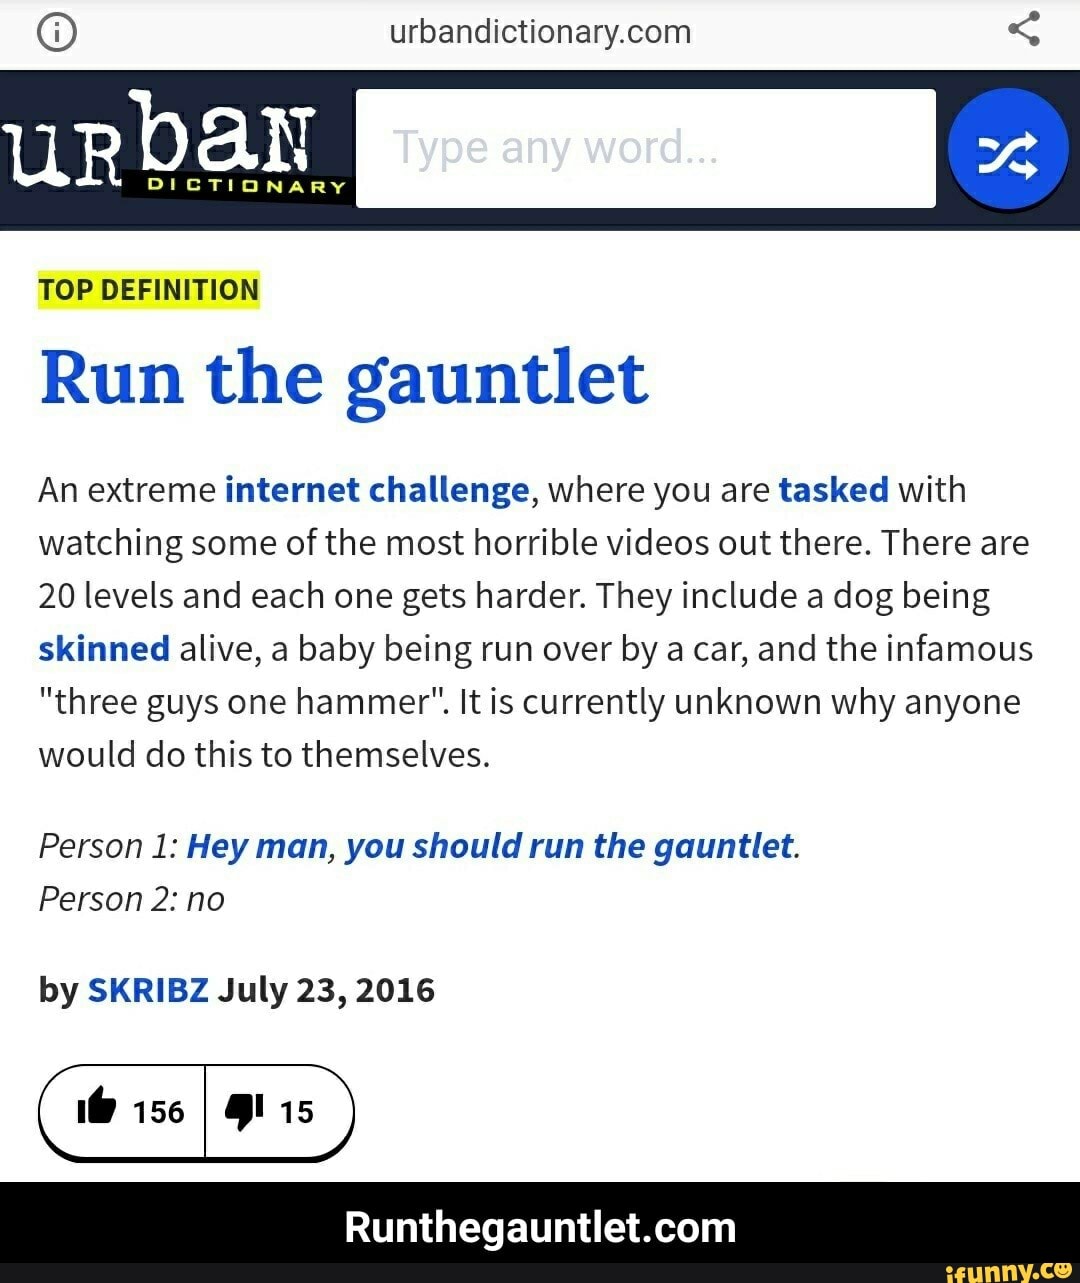 Run the gauntlet challenge